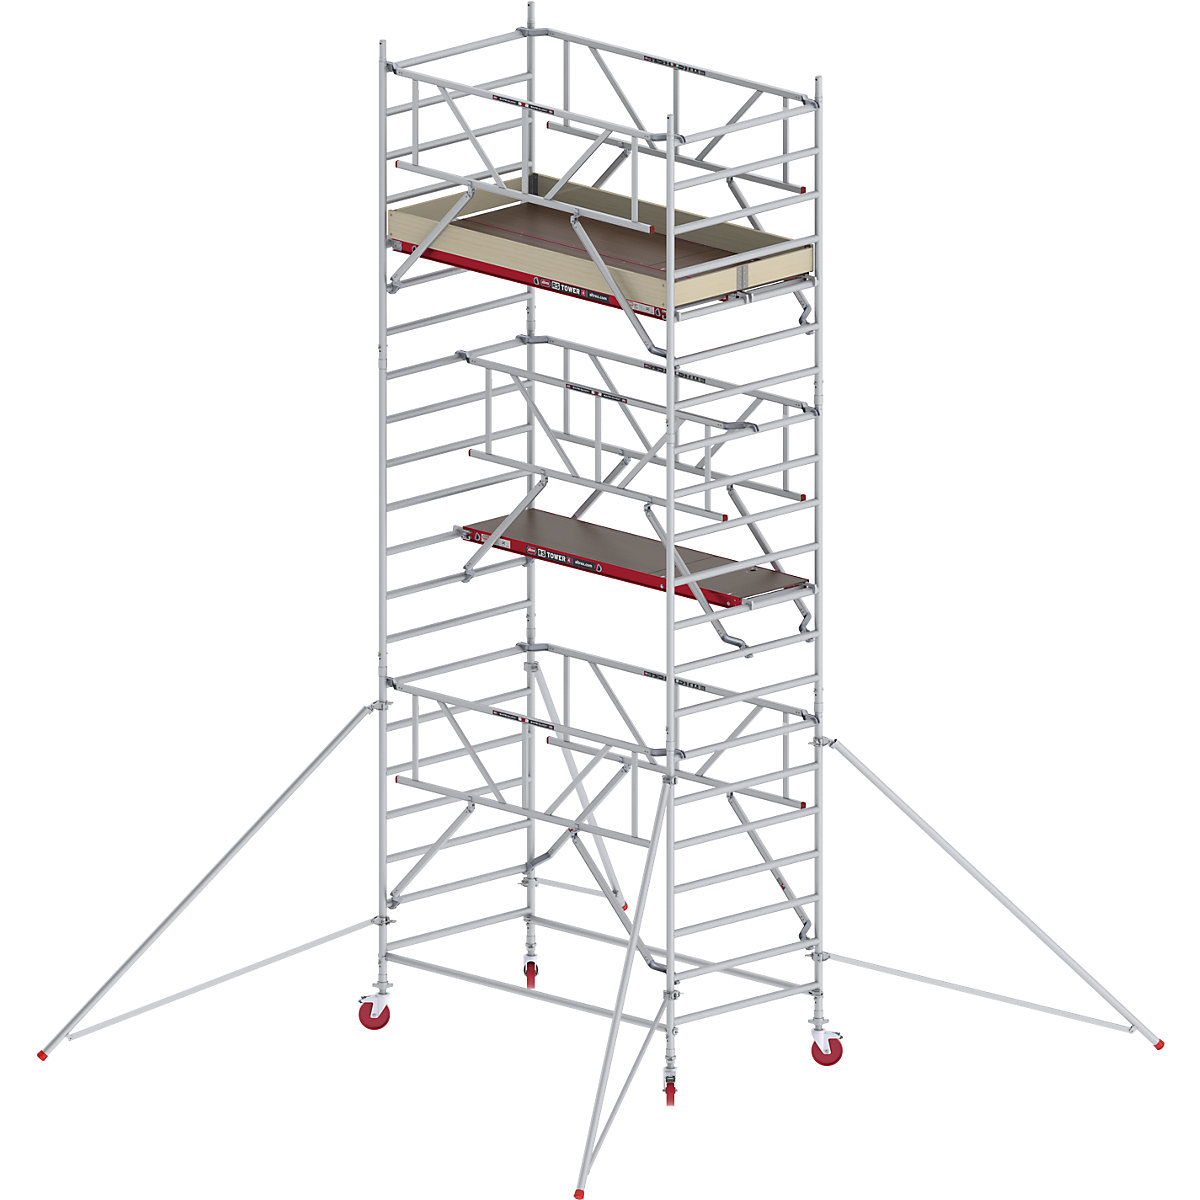 Trabattello mobile RS TOWER 42 largo con Safe-Quick® – Altrex, piattaforma in legno, lunghezza 1,85 m, altezza di lavoro 7,20 m-10